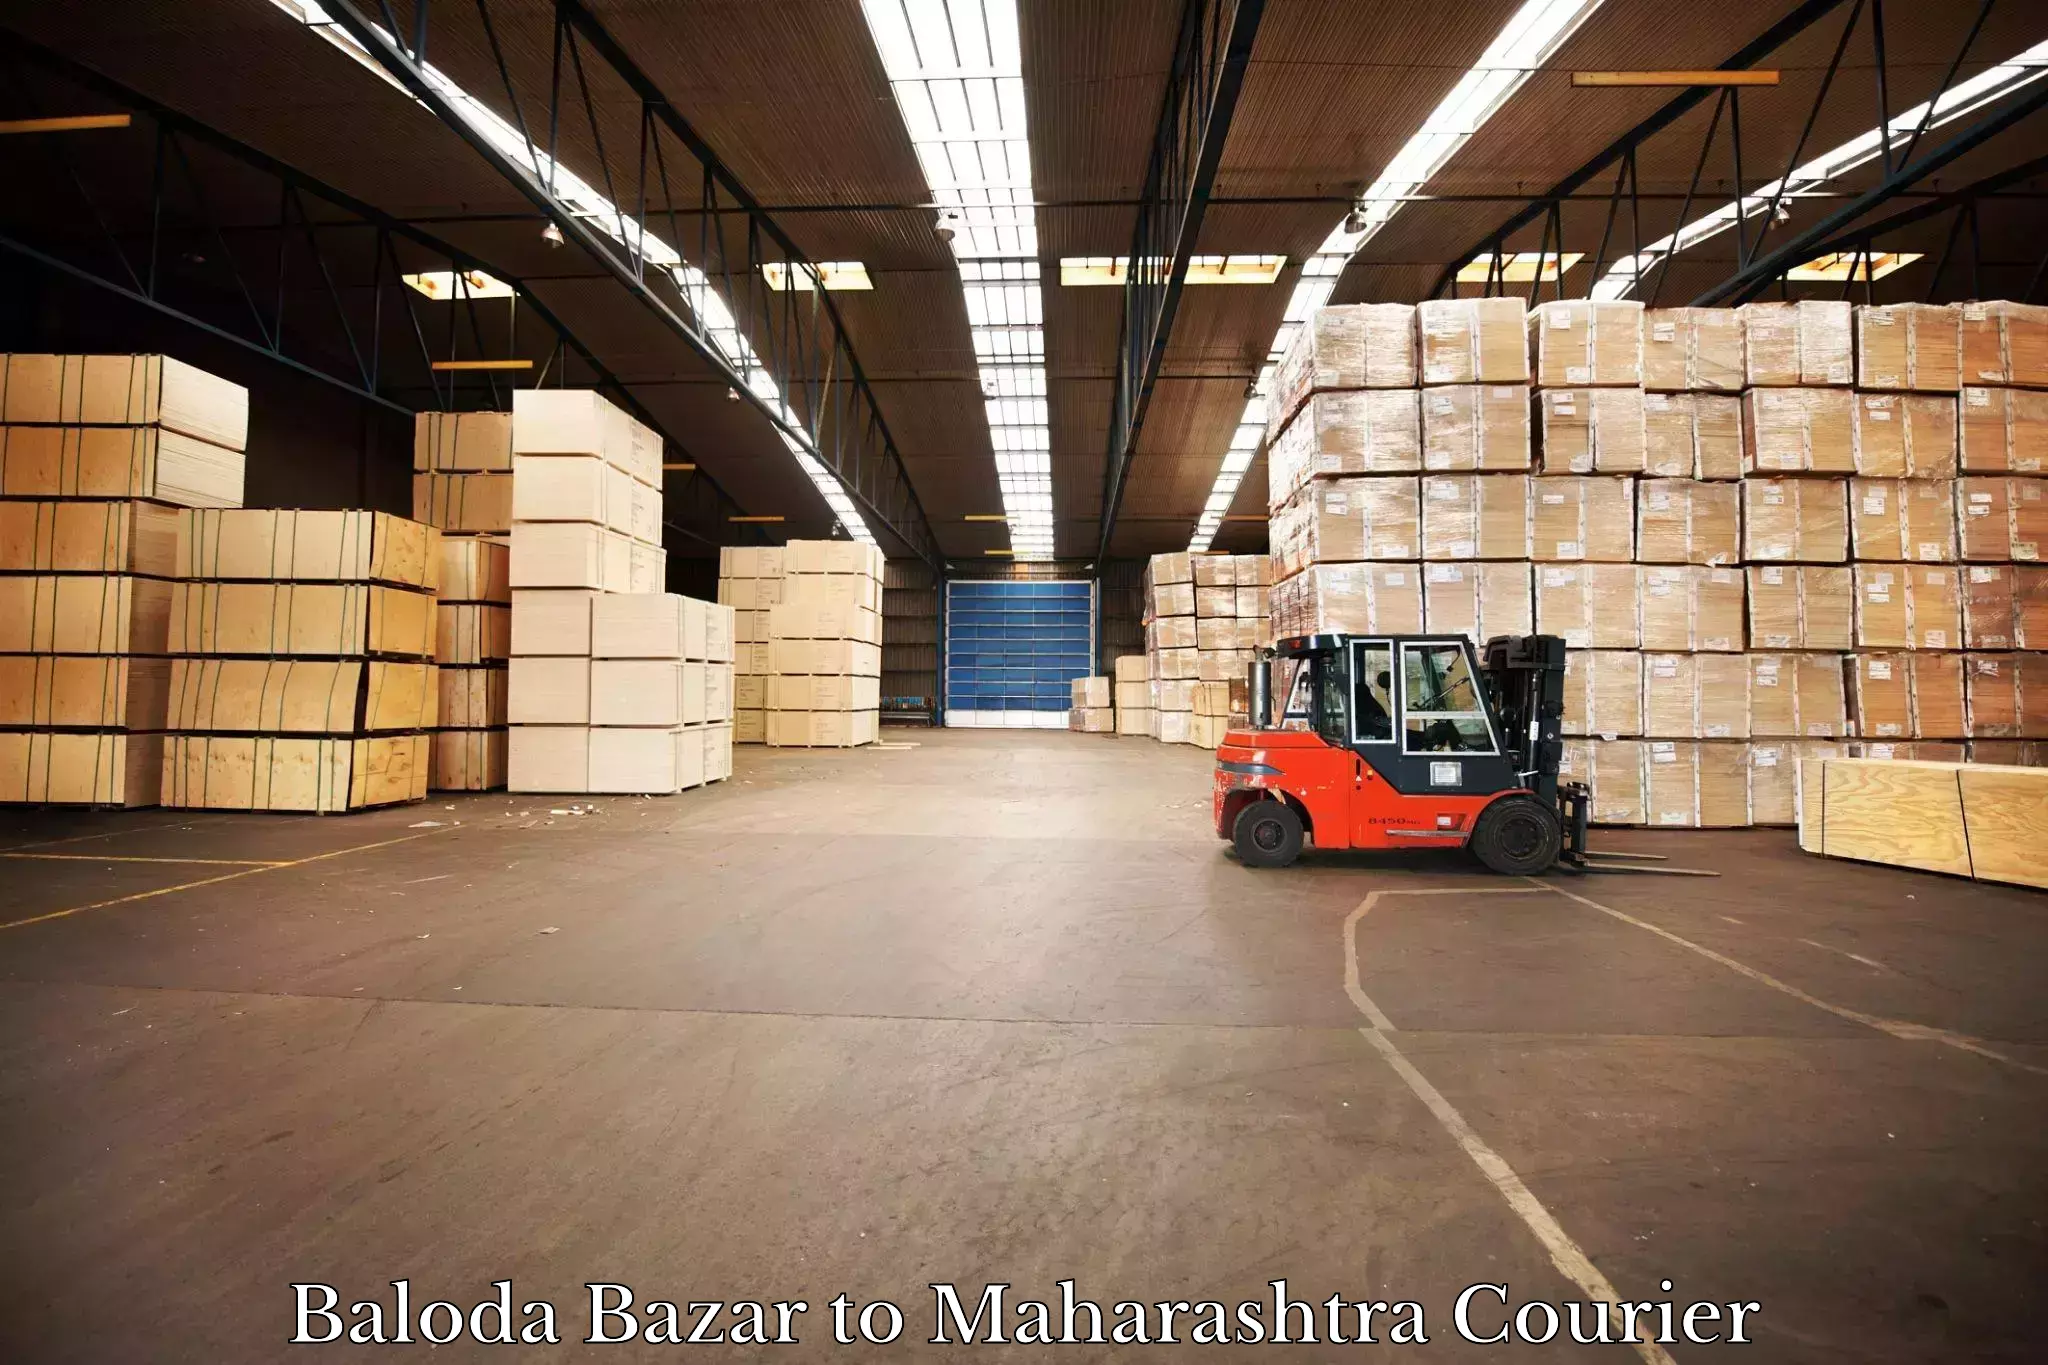 Express logistics service Baloda Bazar to Maharashtra